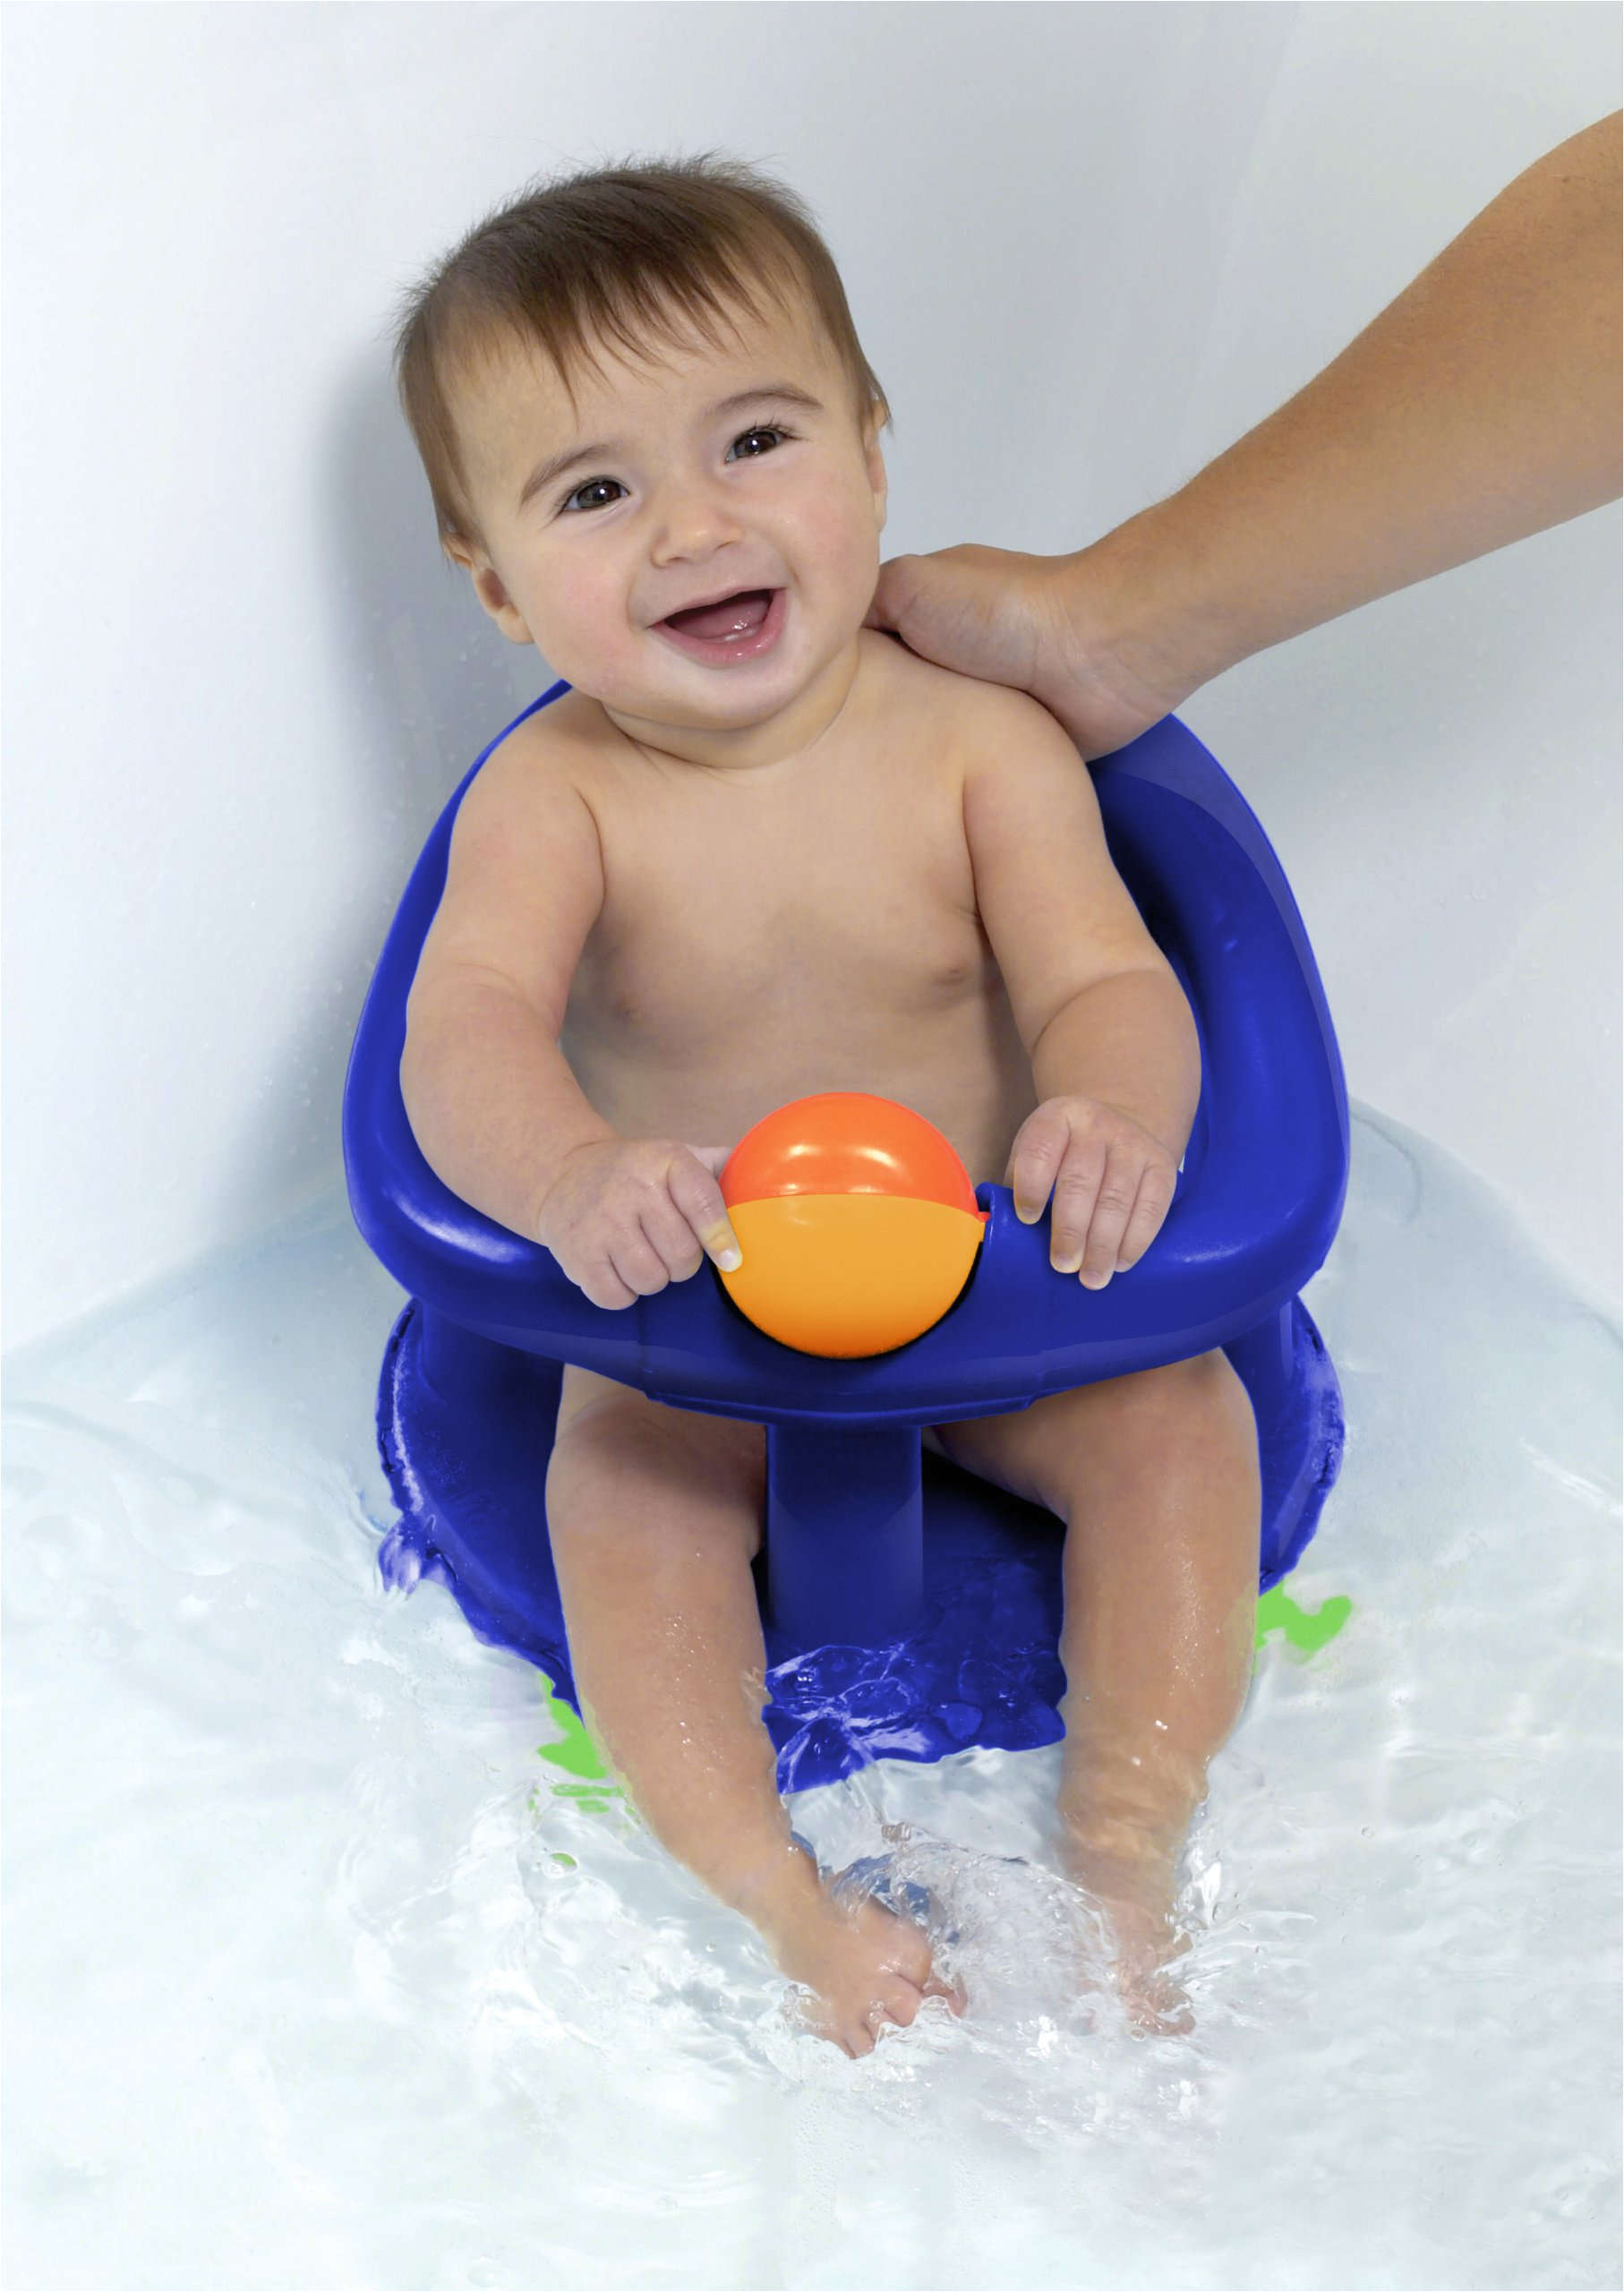 Baby Bathtub On Ebay Safety First Swivel Baby Bath Tub Rotating Ring Seat